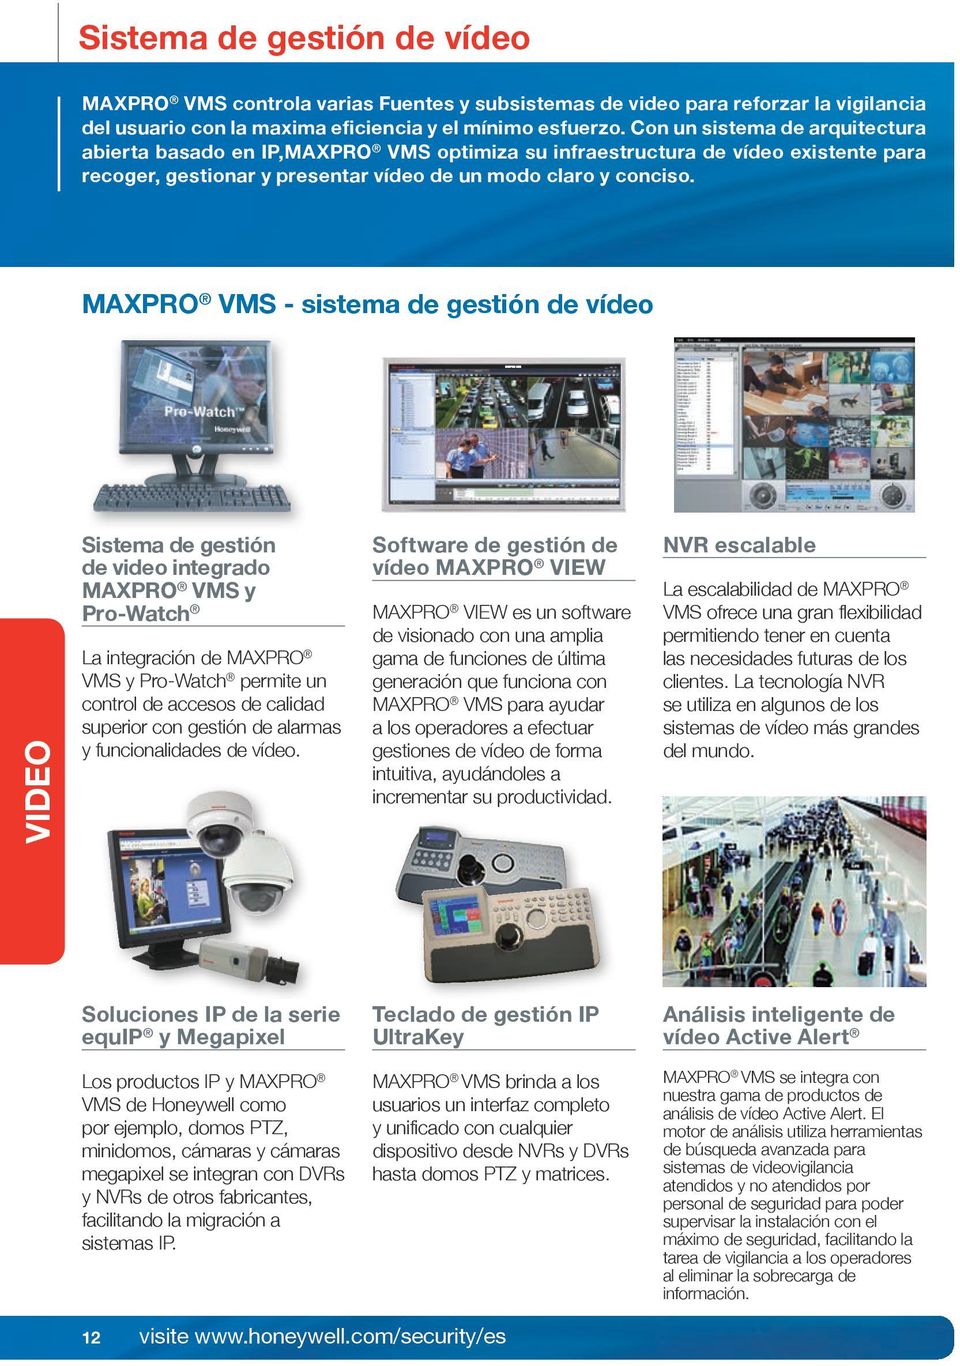 MAXPRO VMS - sistema de gestión de vídeo VIDEO Sistema de gestión de video integrado MAXPRO VMS y Pro-Watch La integración de MAXPRO VMS y Pro-Watch permite un control de accesos de calidad superior